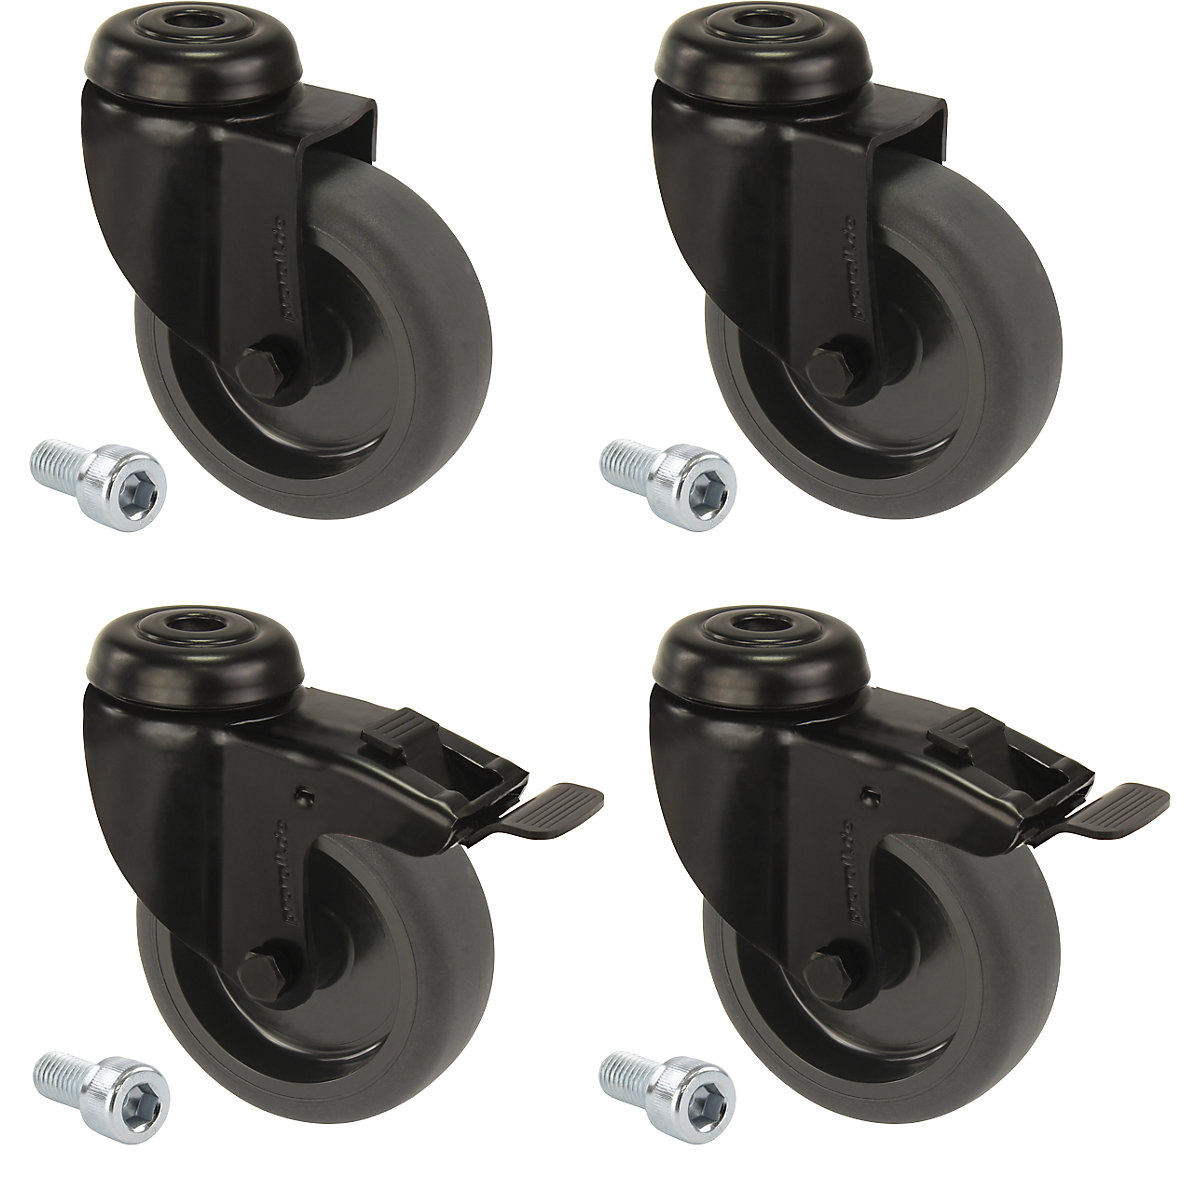 Črno termoplastično gumijasto kolo, natično z luknjo, komplet – Proroll, 4 vrtljiva kolesa, od tega 2 z dvojno zavoro, kolo Ø x širina 75 x 23 mm-3